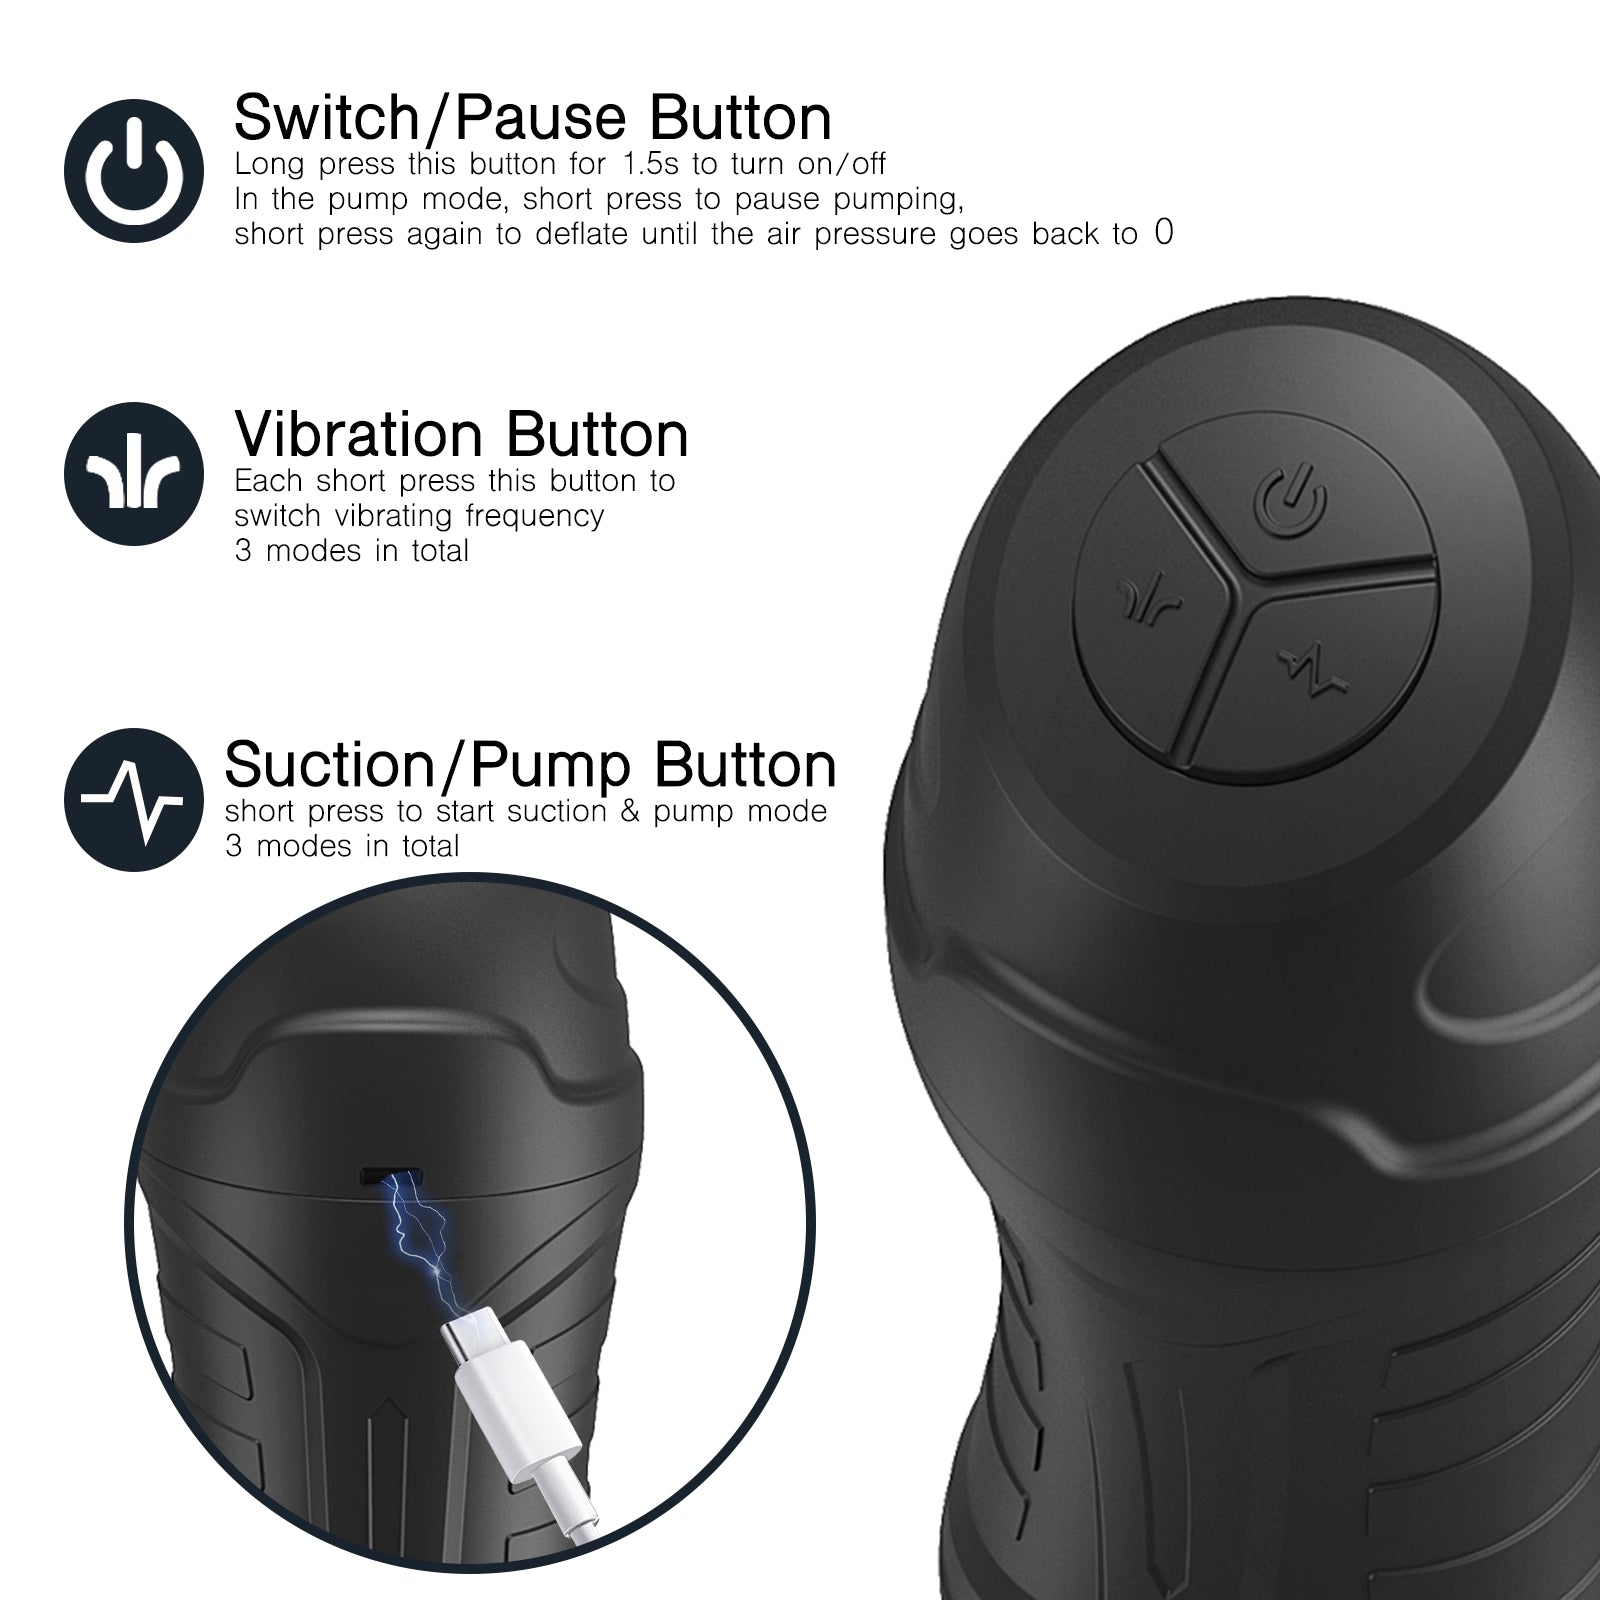 Switch/Pause Button, Vibration Button, Suction/Pump Button